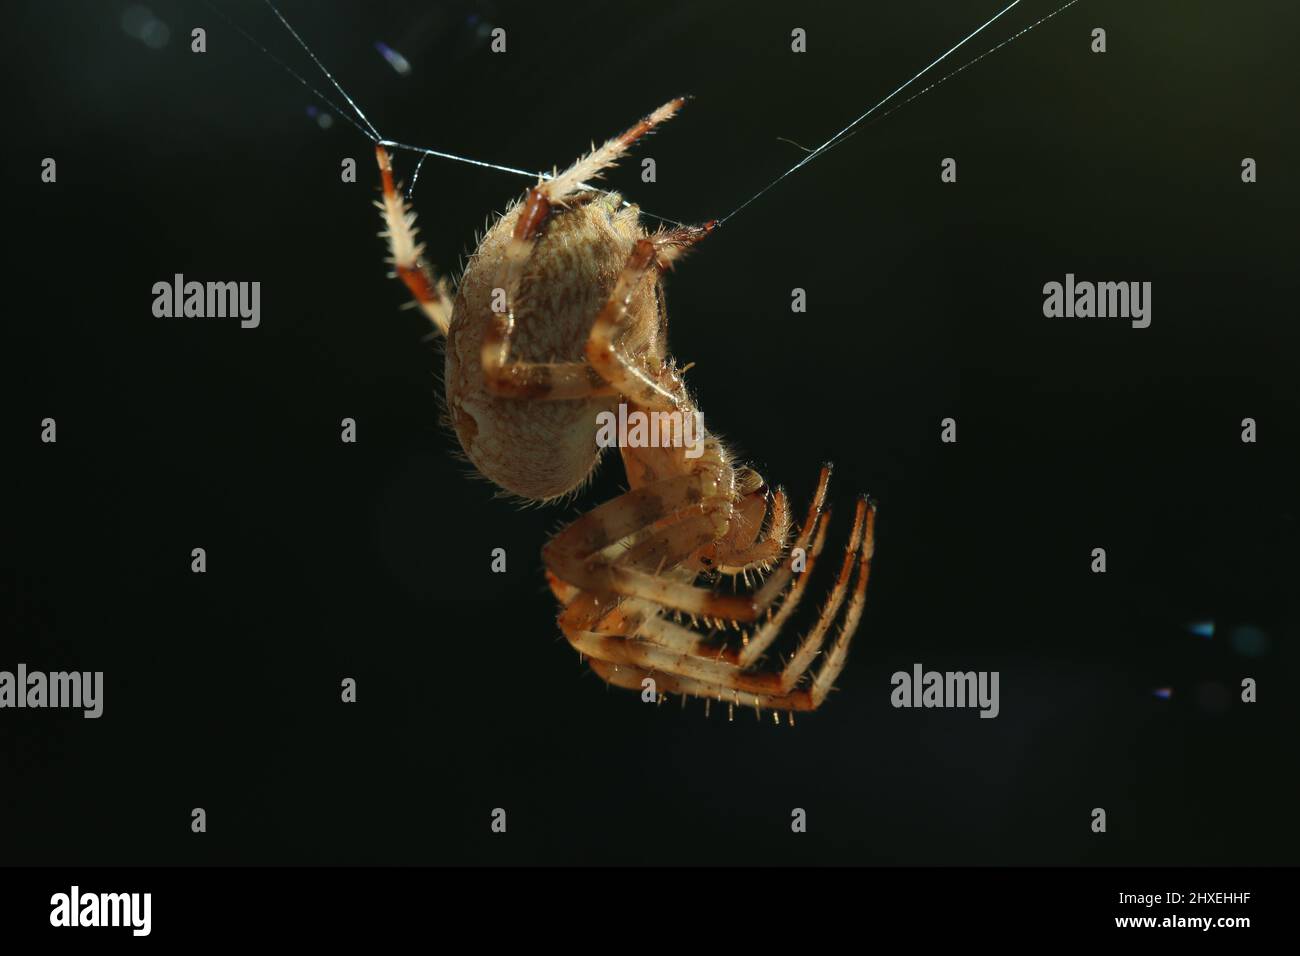 Kreuzspinne mit Spinnennetz vor schwarzem hintergrund - araignée croisée avec toile d'araignée et fond noir - biodiversité d'Araneae Banque D'Images